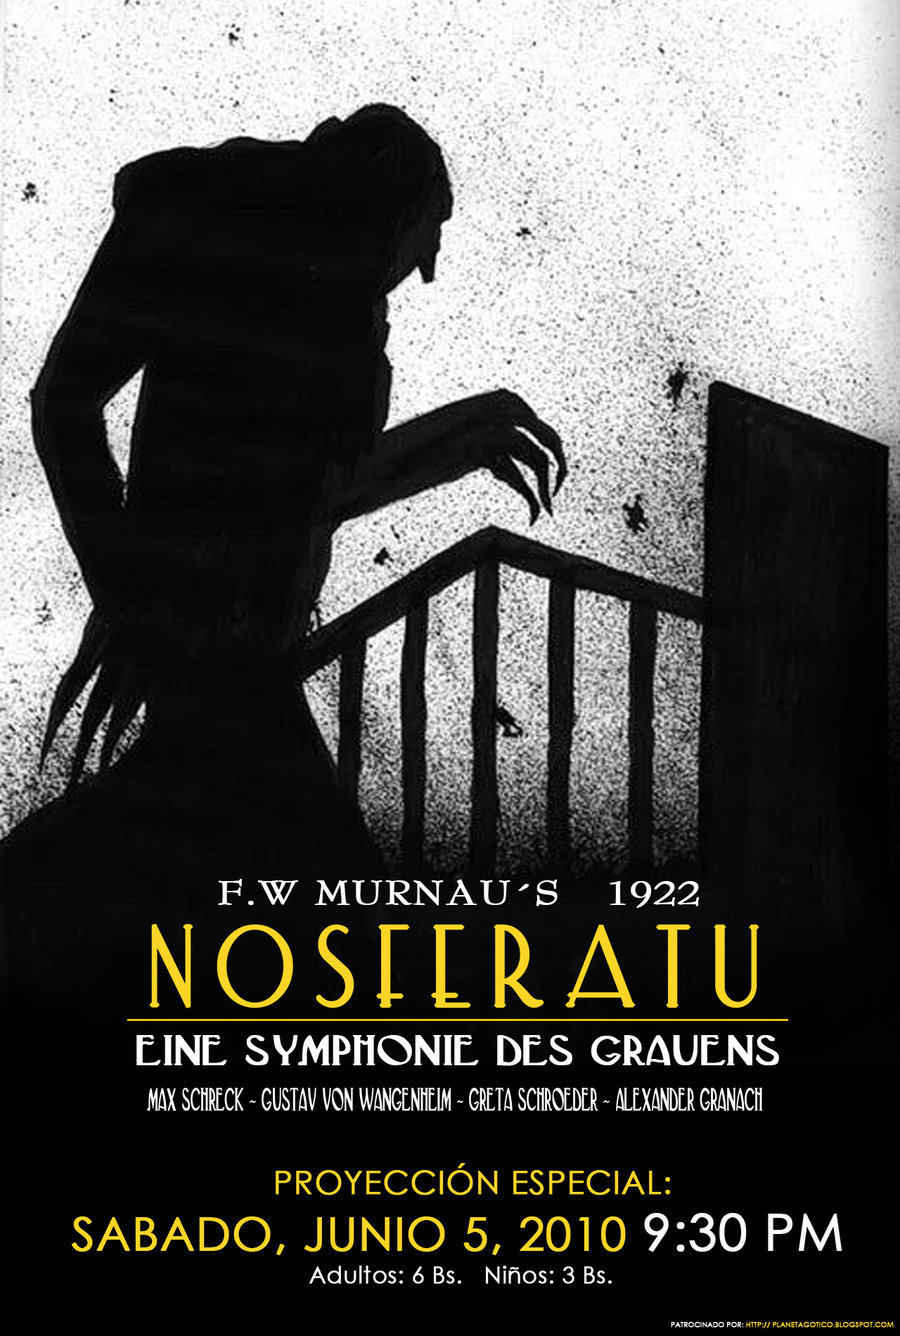 [Image: Nosferatu_poster_by_PandoraDisenos.jpg]